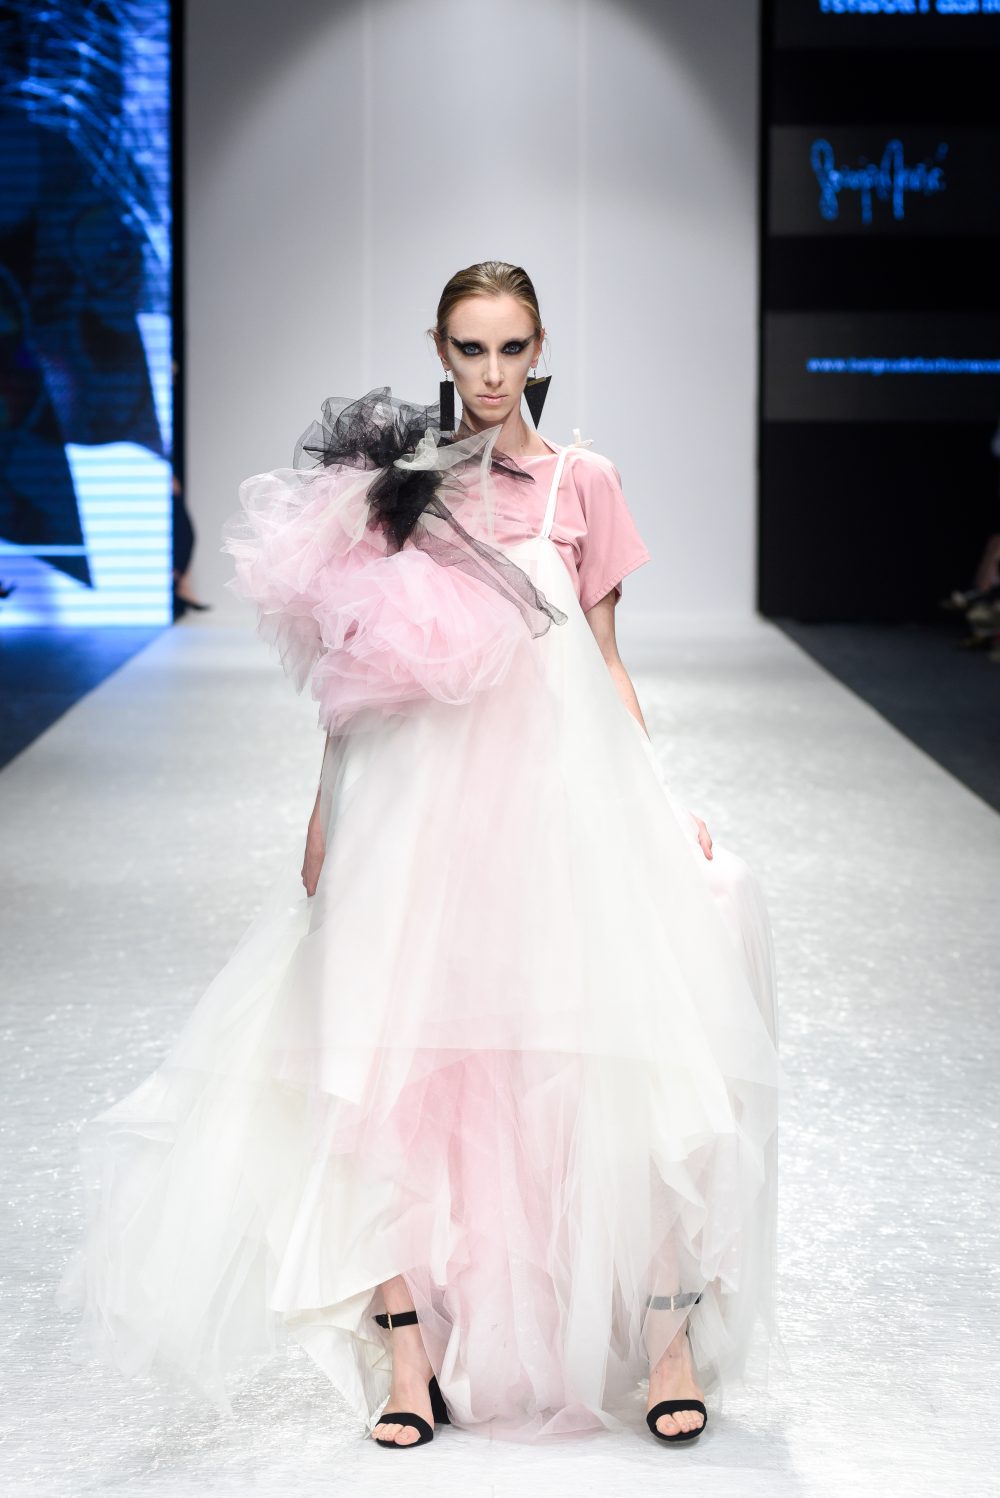 DJT9514 Sonja Jocic e1556018392125 Perwoll Fashion Week: Revije autorske mode i Martini Vesto